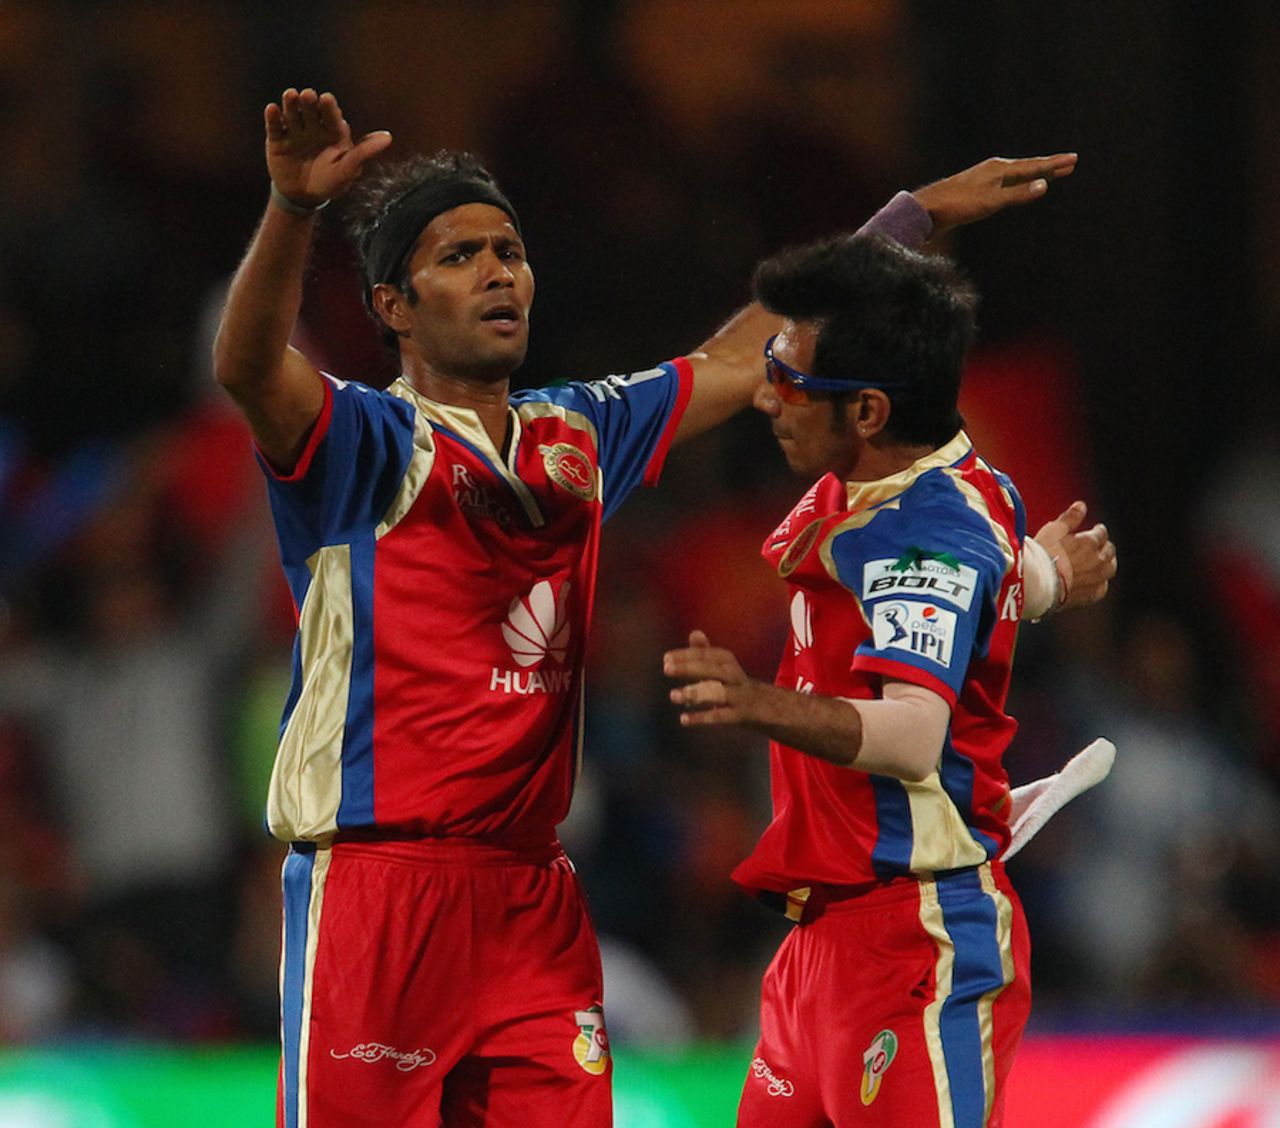 Ashok Dinda celebrates the wicket of KL Rahul, Royal Challengers Bangalore v Sunrisers Hyderabad, IPL, Bangalore, May 4, 2014